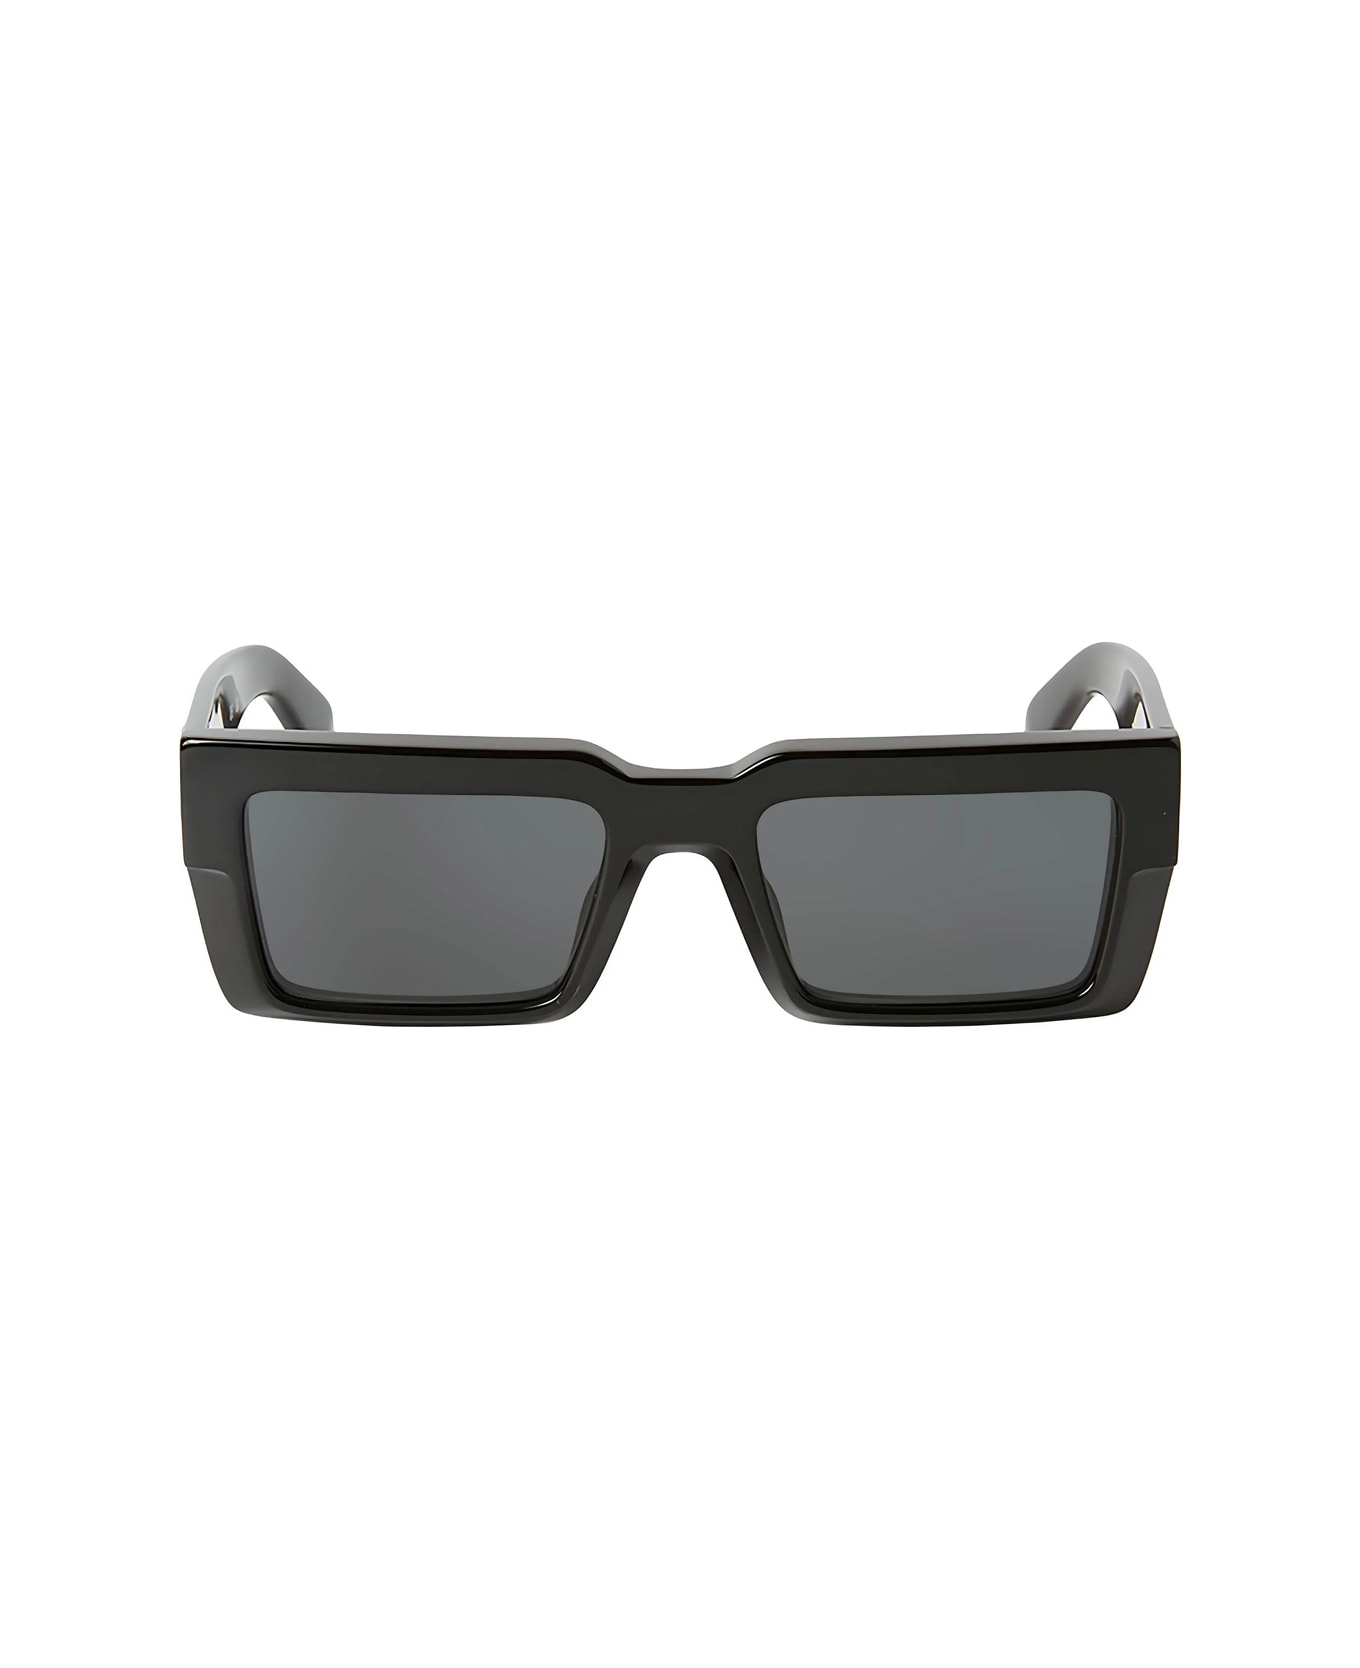 Off-White Oeri114 Moberly 1007 Black Sunglasses - Nero